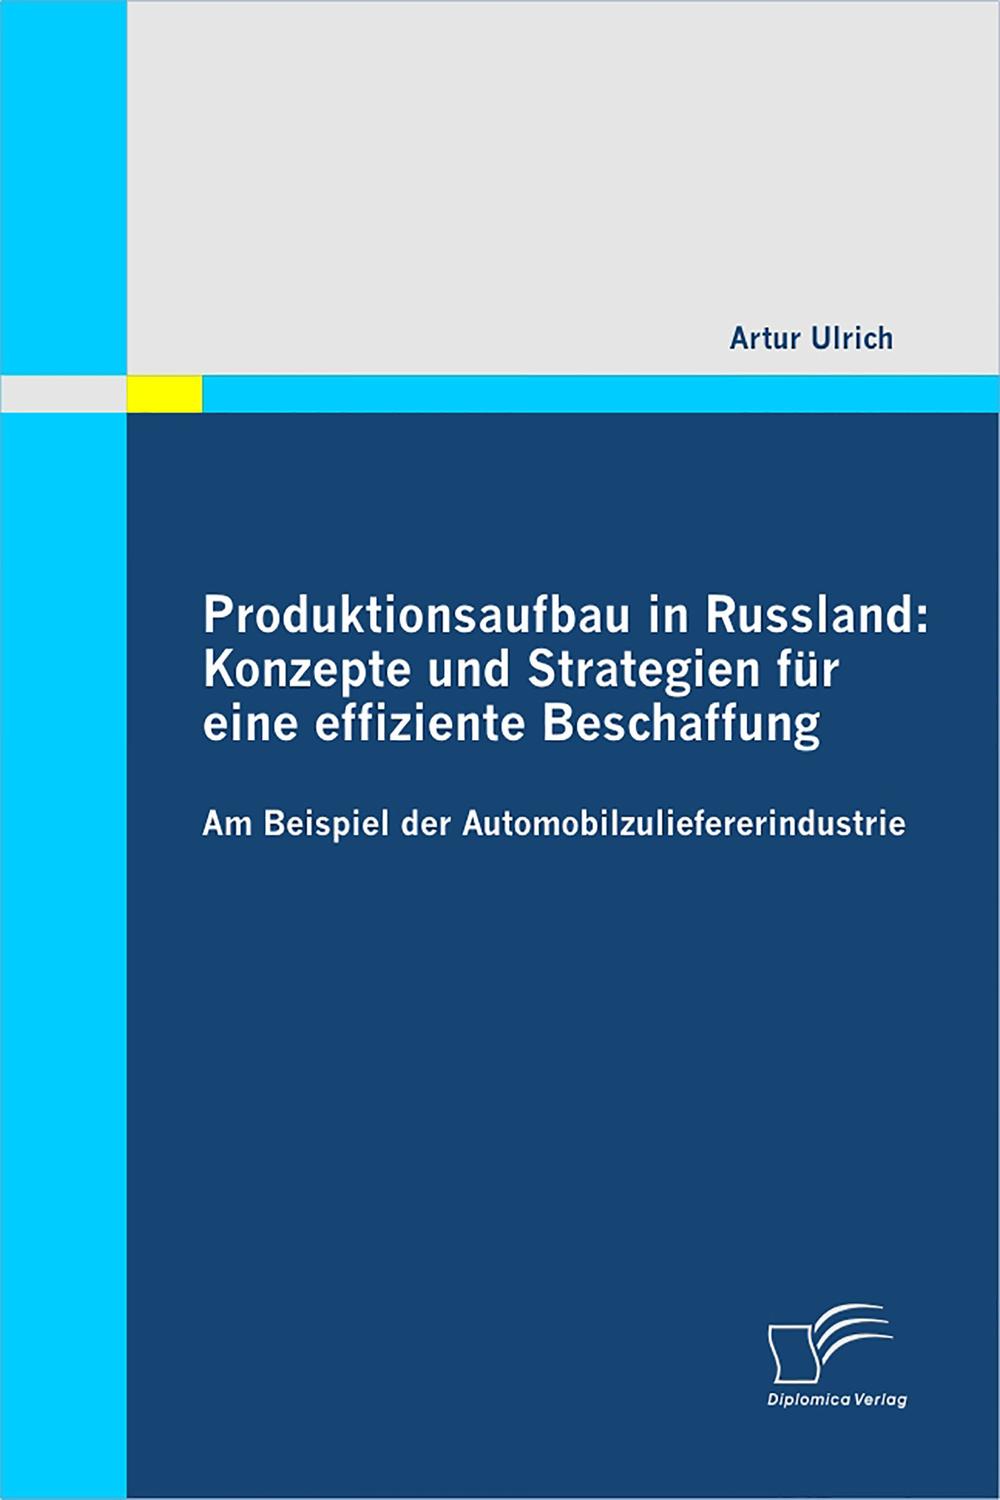 Produktionsaufbau in Russland: Konzepte und Strategien für eine effiziente Beschaffung - Artur Ulrich